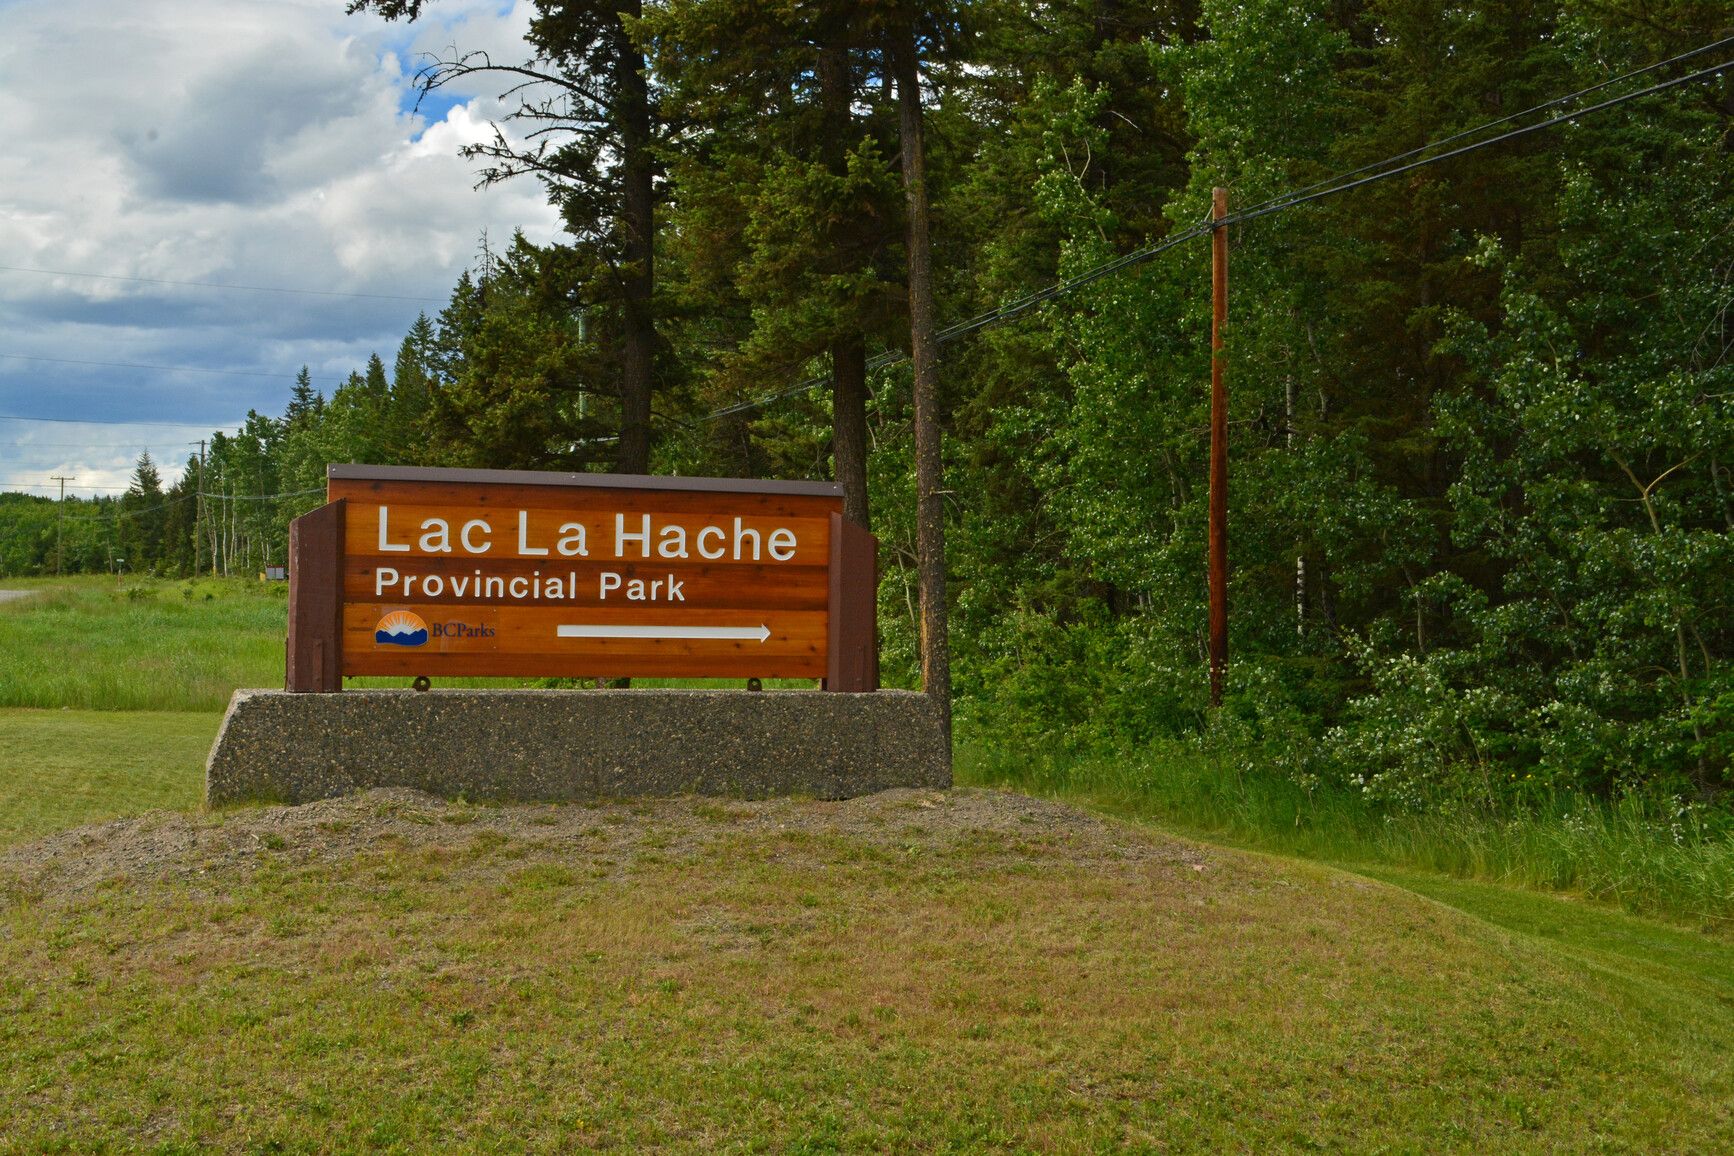 Entrance sign for Lac La Hache Park.